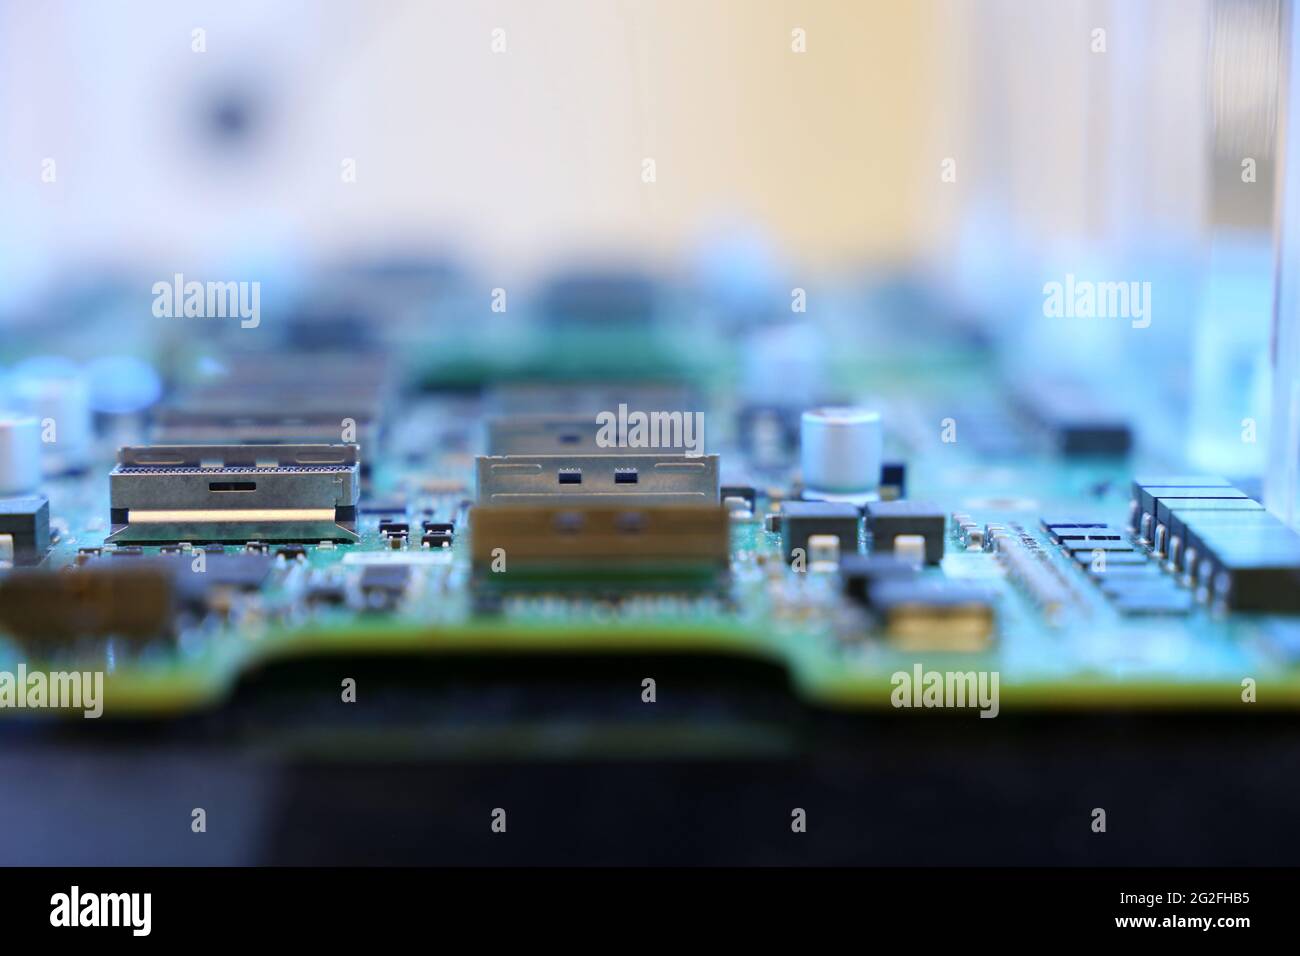 Mikrochips auf der Computerplattform. Computer-Motherboard mit Komponenten für Server, Software und Hardware komplex Stockfoto